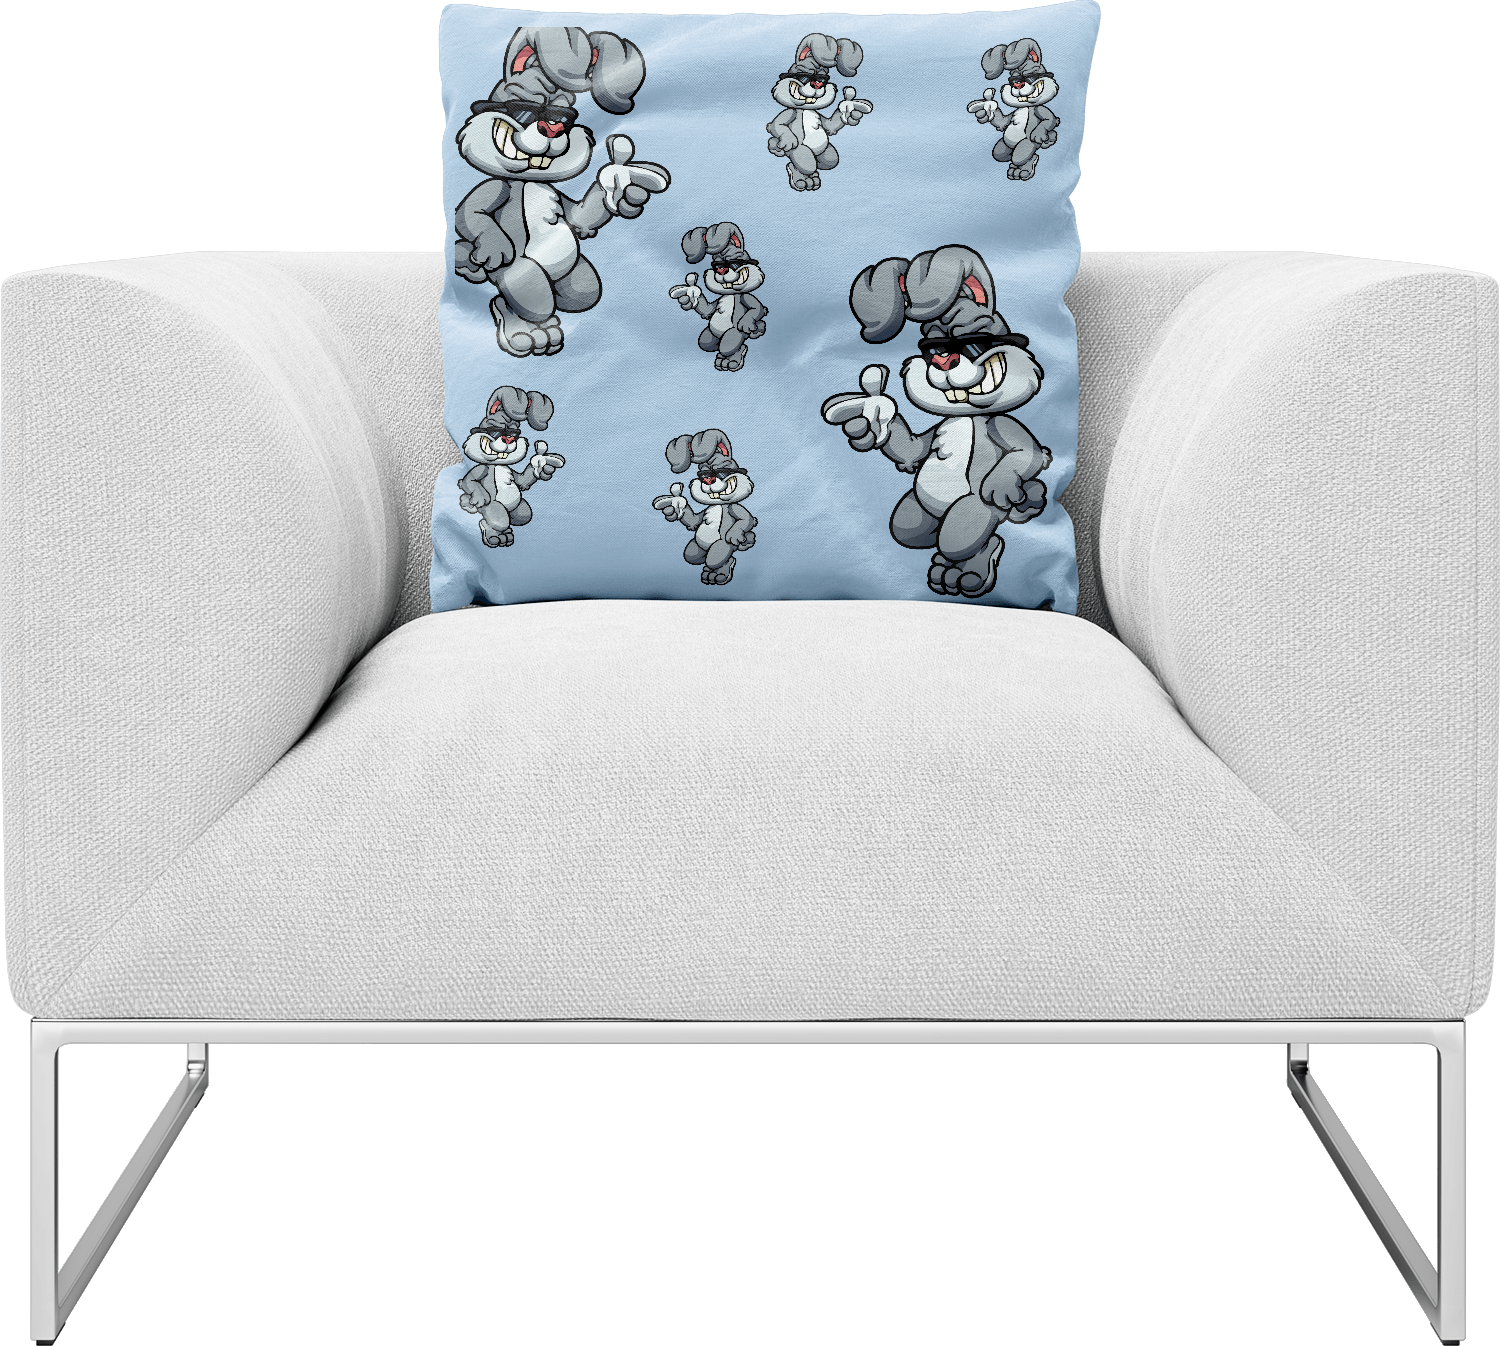 Rogue Rabbit Pillows Cushions - fungear.com.au